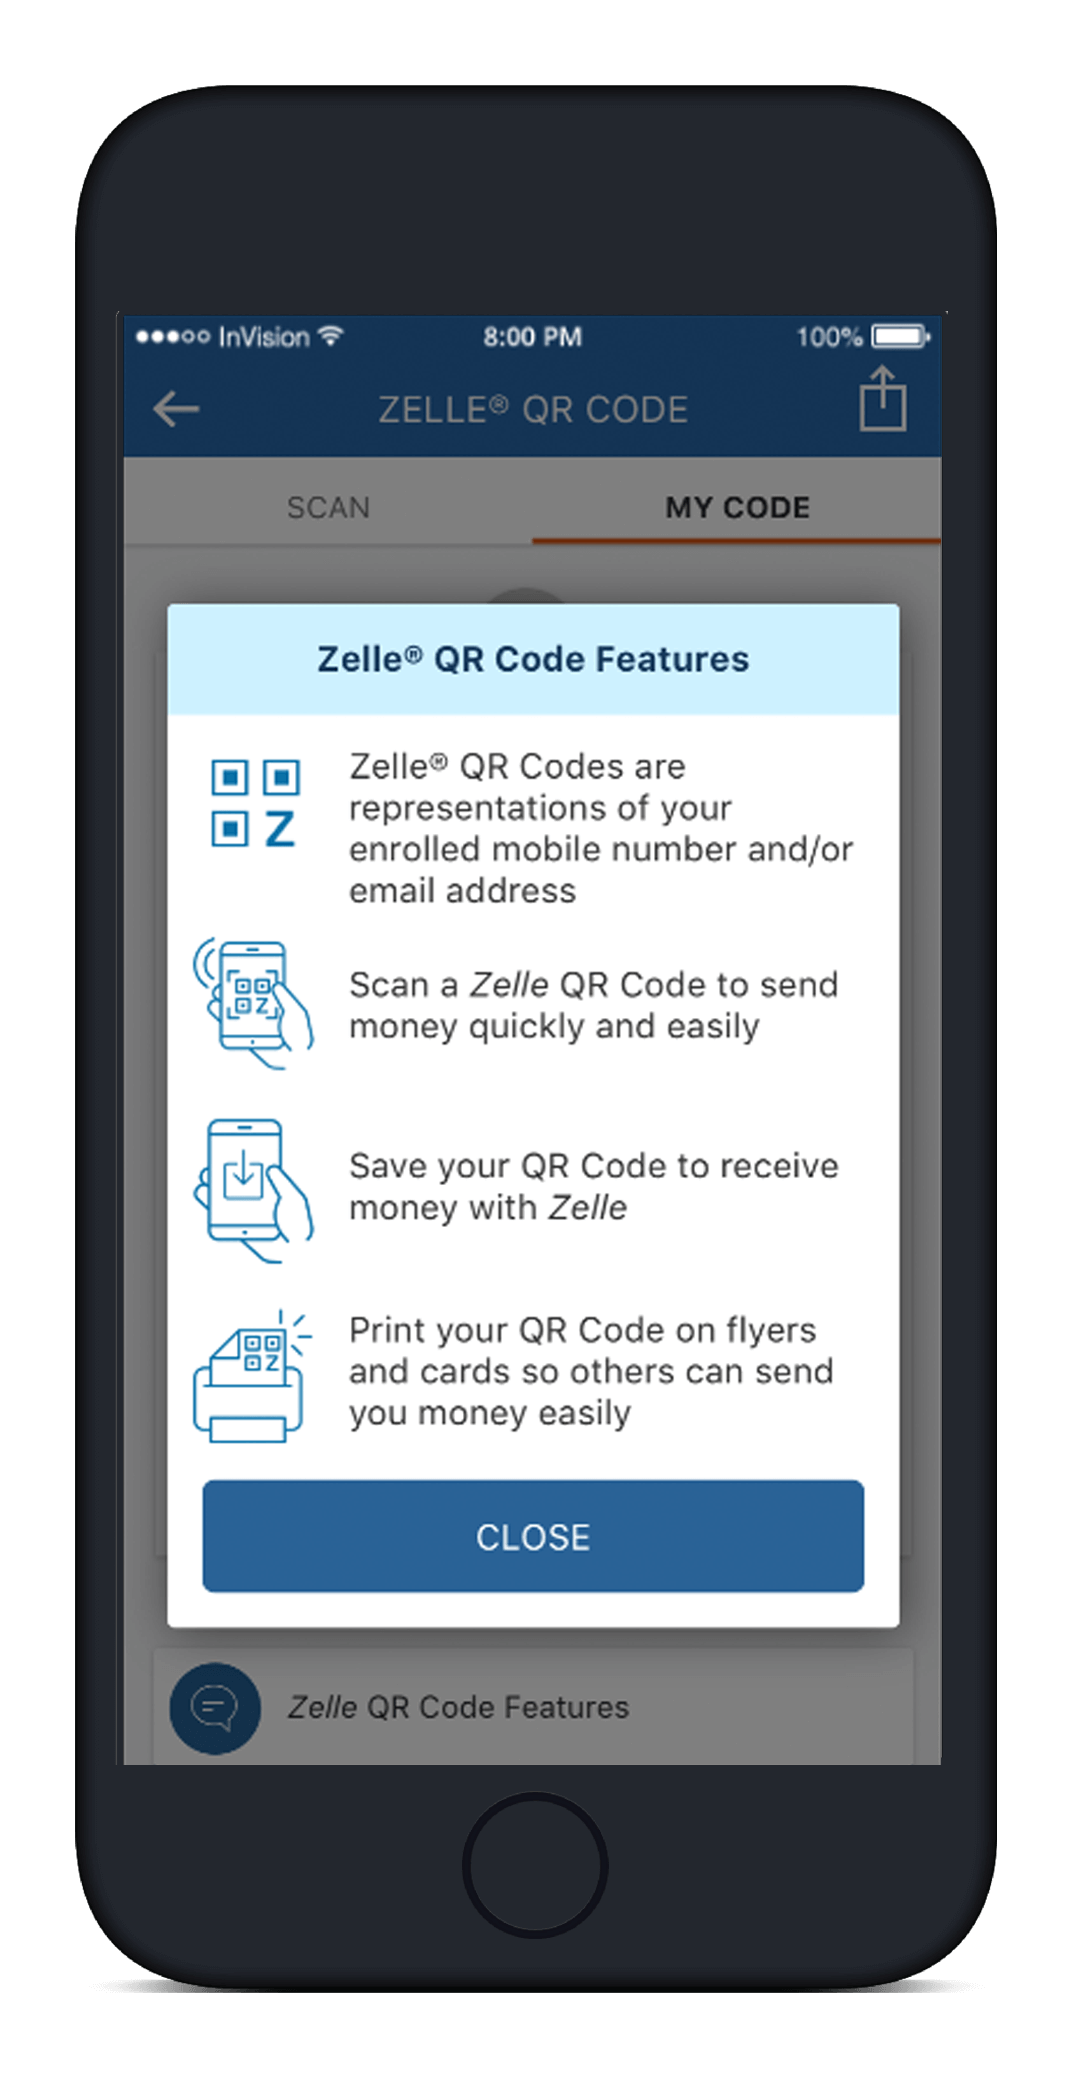 PNC mobile app Zelle QR code features screen